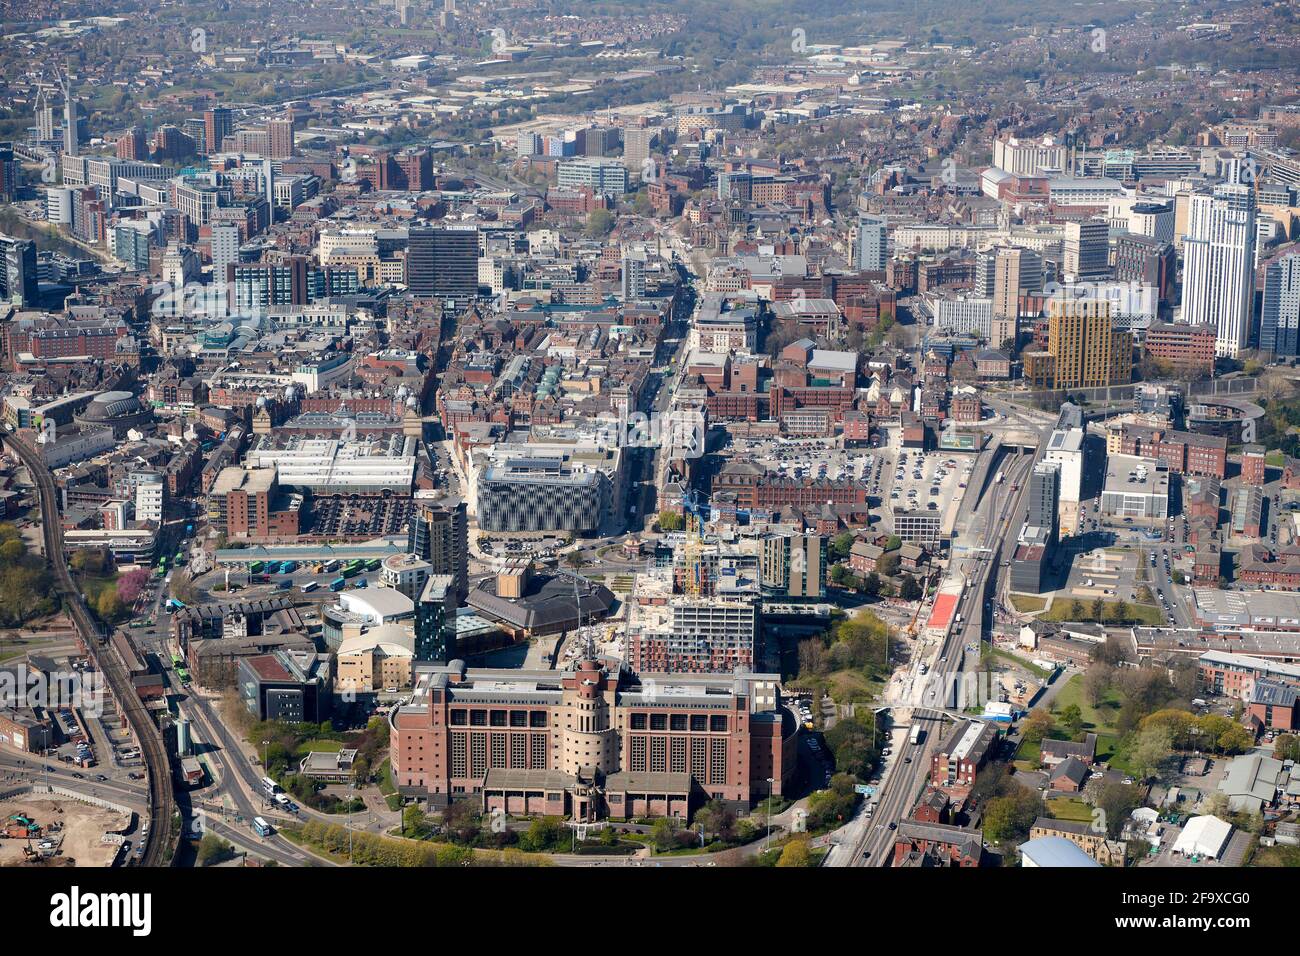 Vista aérea del centro de la ciudad de Leeds, West Yorkshire, norte de Inglaterra, Reino Unido, desde el este, edificio DSS, Quarry House, en primer plano Foto de stock